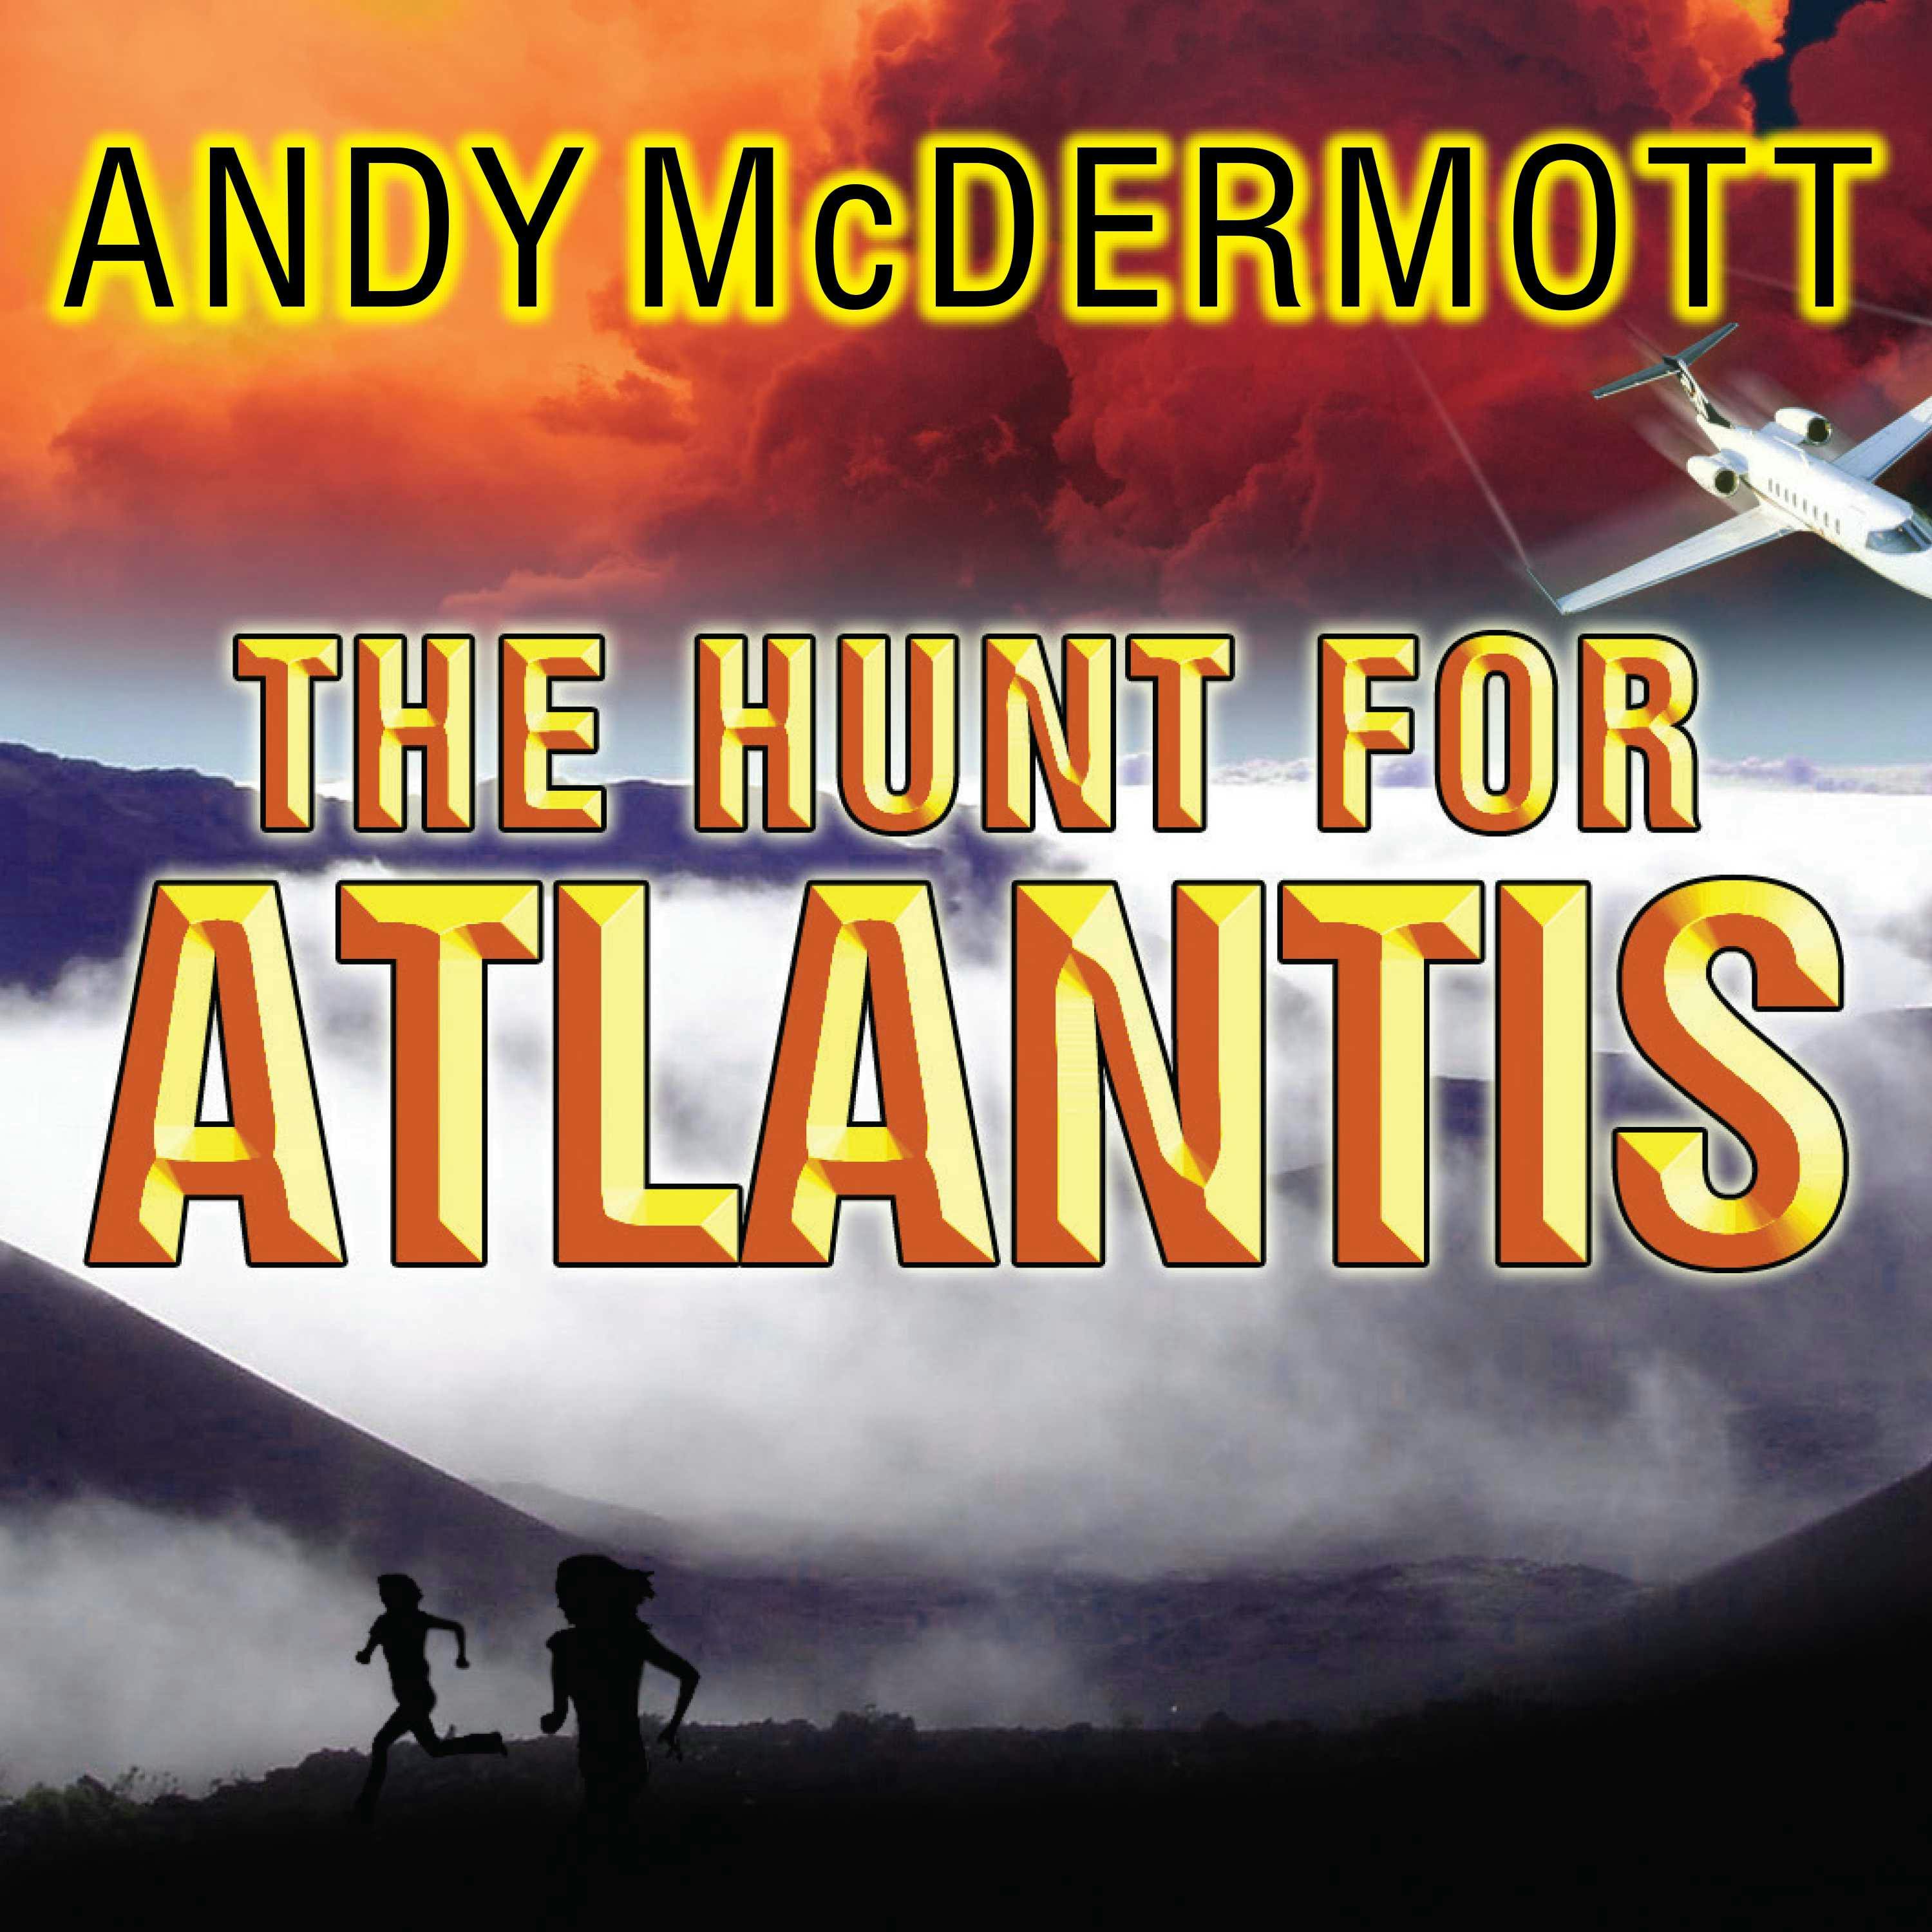 The Hunt for Atlantis: A Novel - Andy McDermott